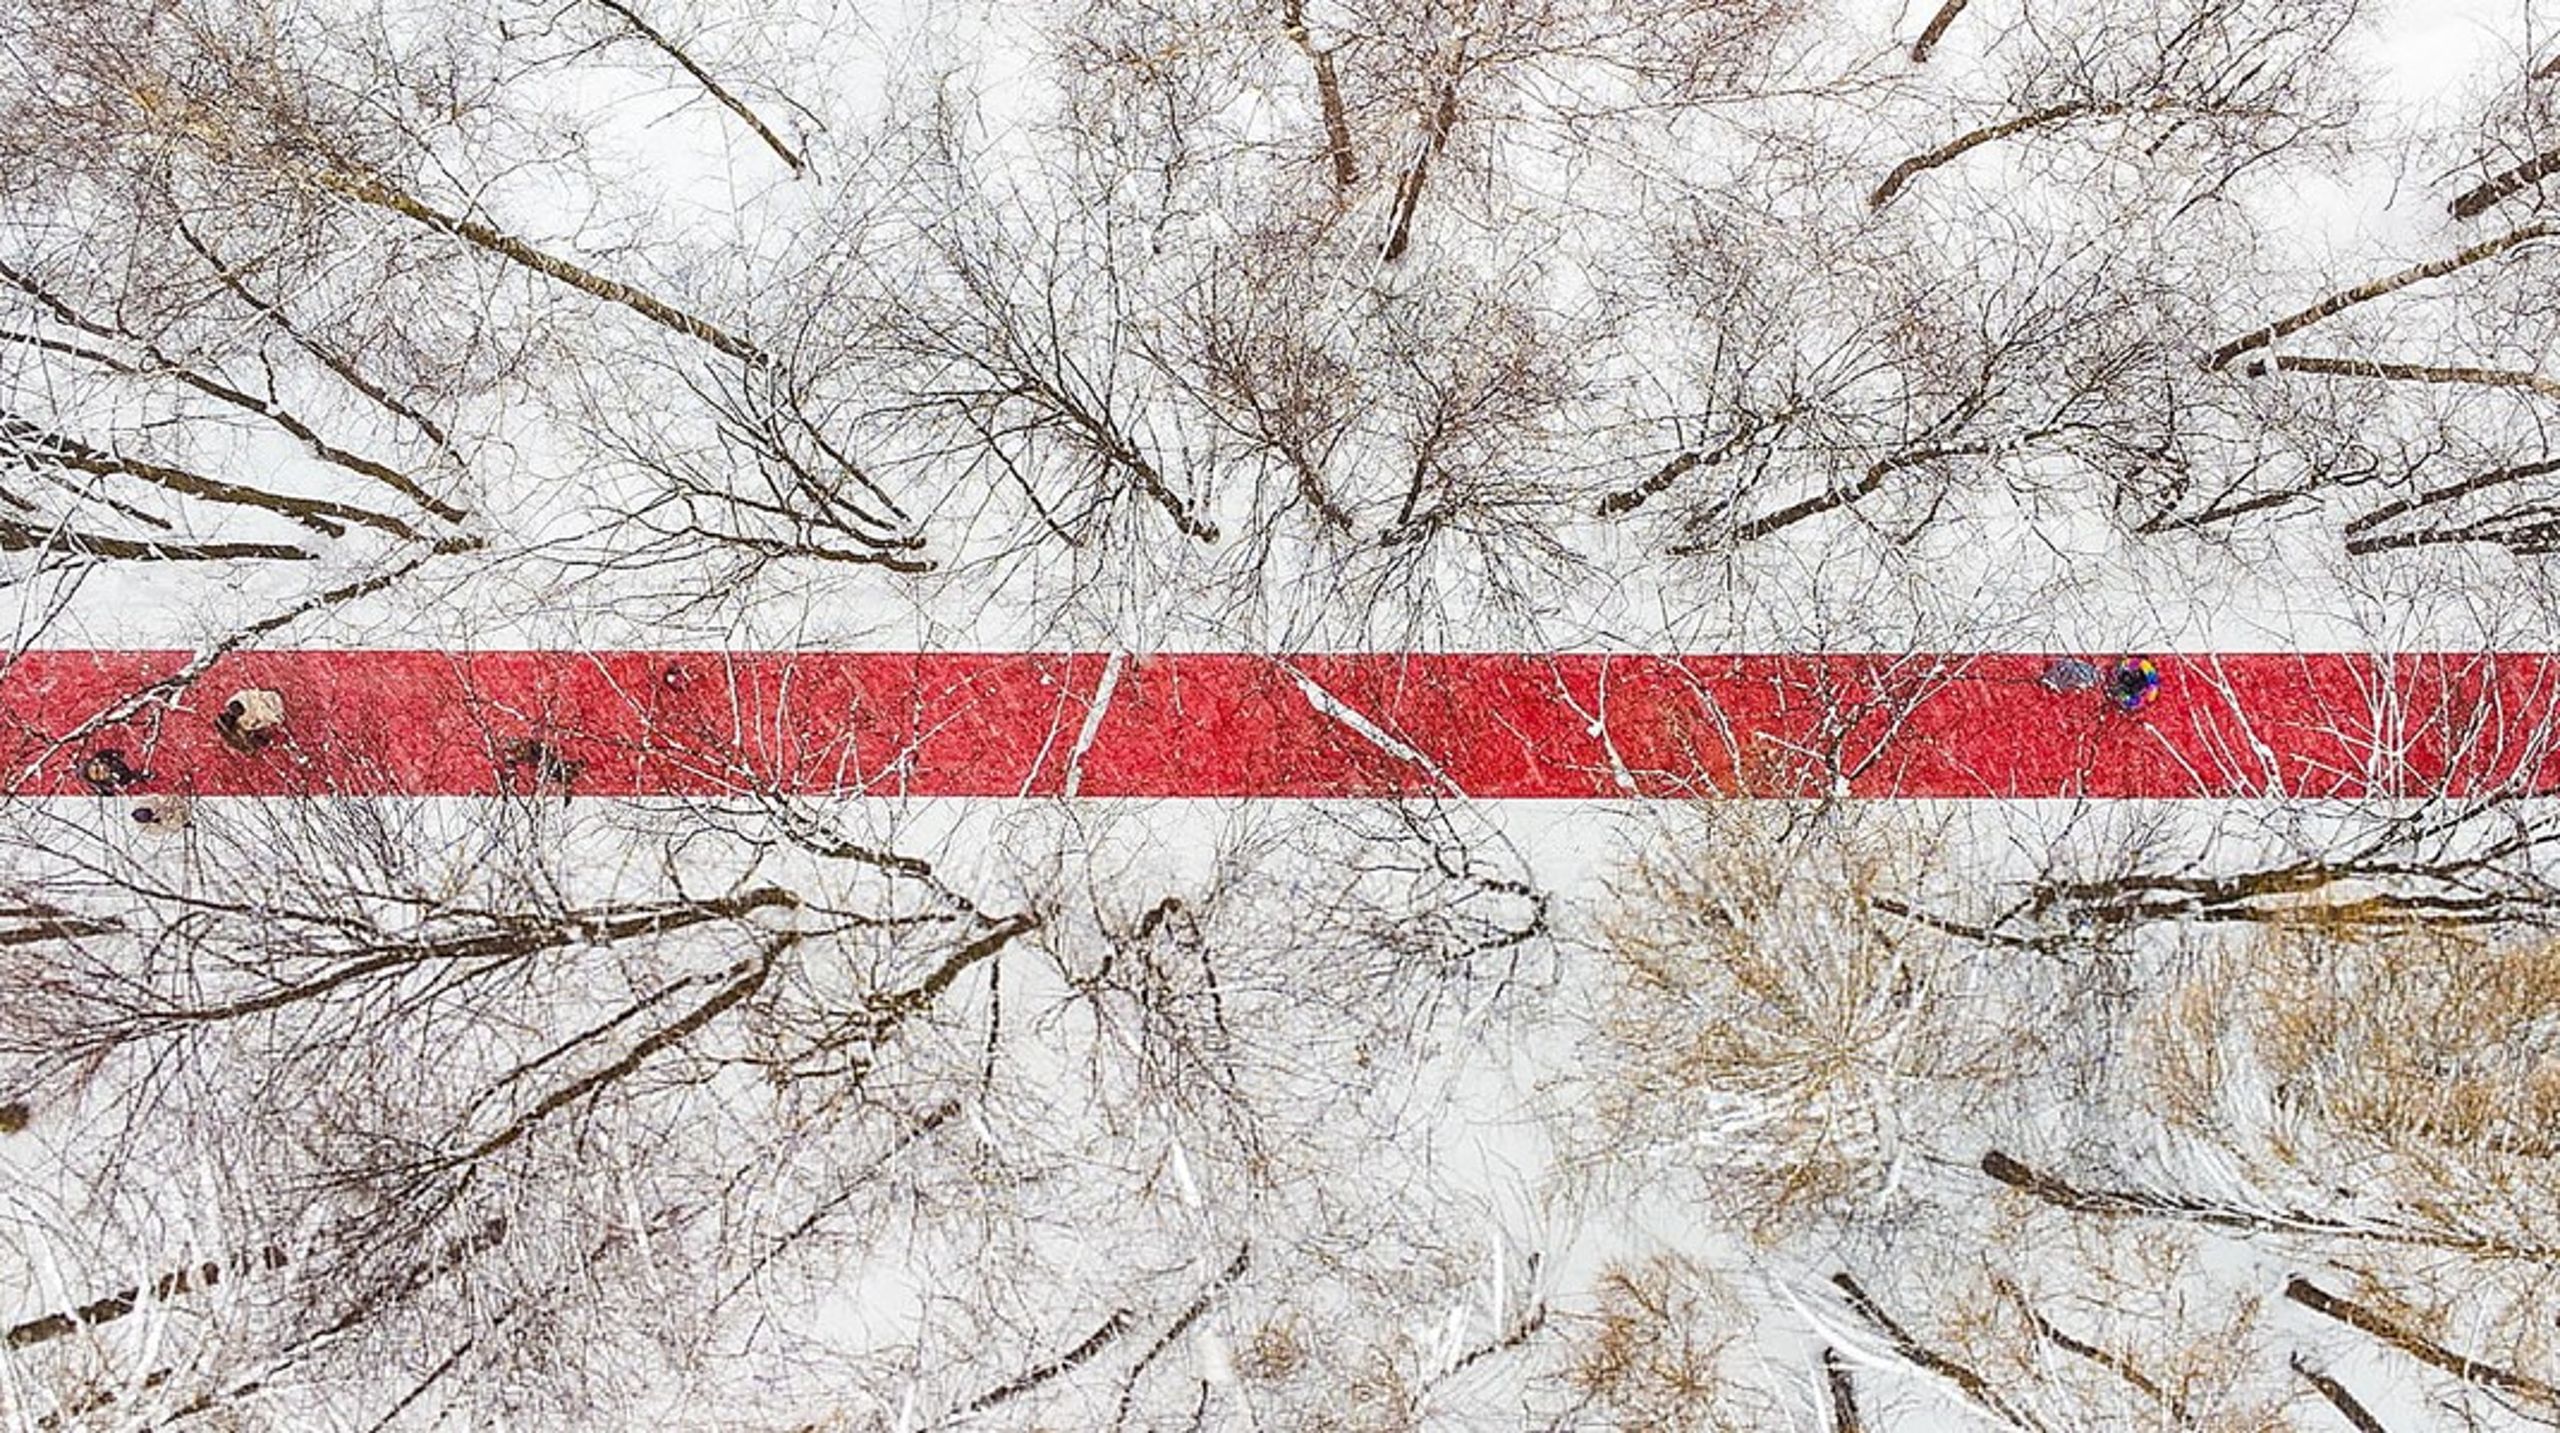 Værk med titlen "Nowhere" af den russiske kunstner Gregory Orekhov udstillet ved Razdory, Rusland, februar, 2022. Arkivfoto.